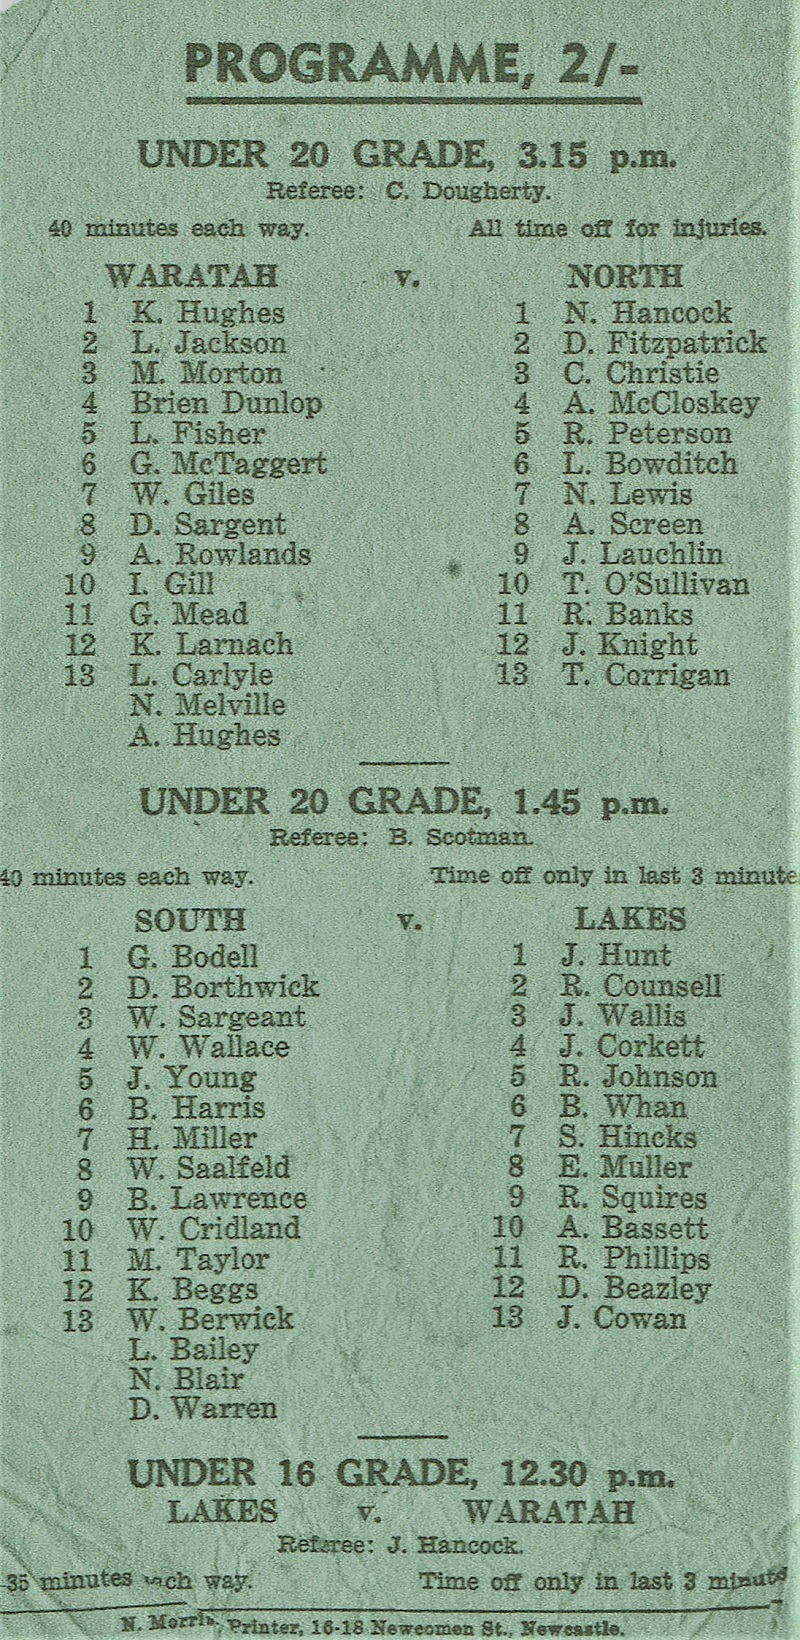 Under 20 Waratah vs North - 1957